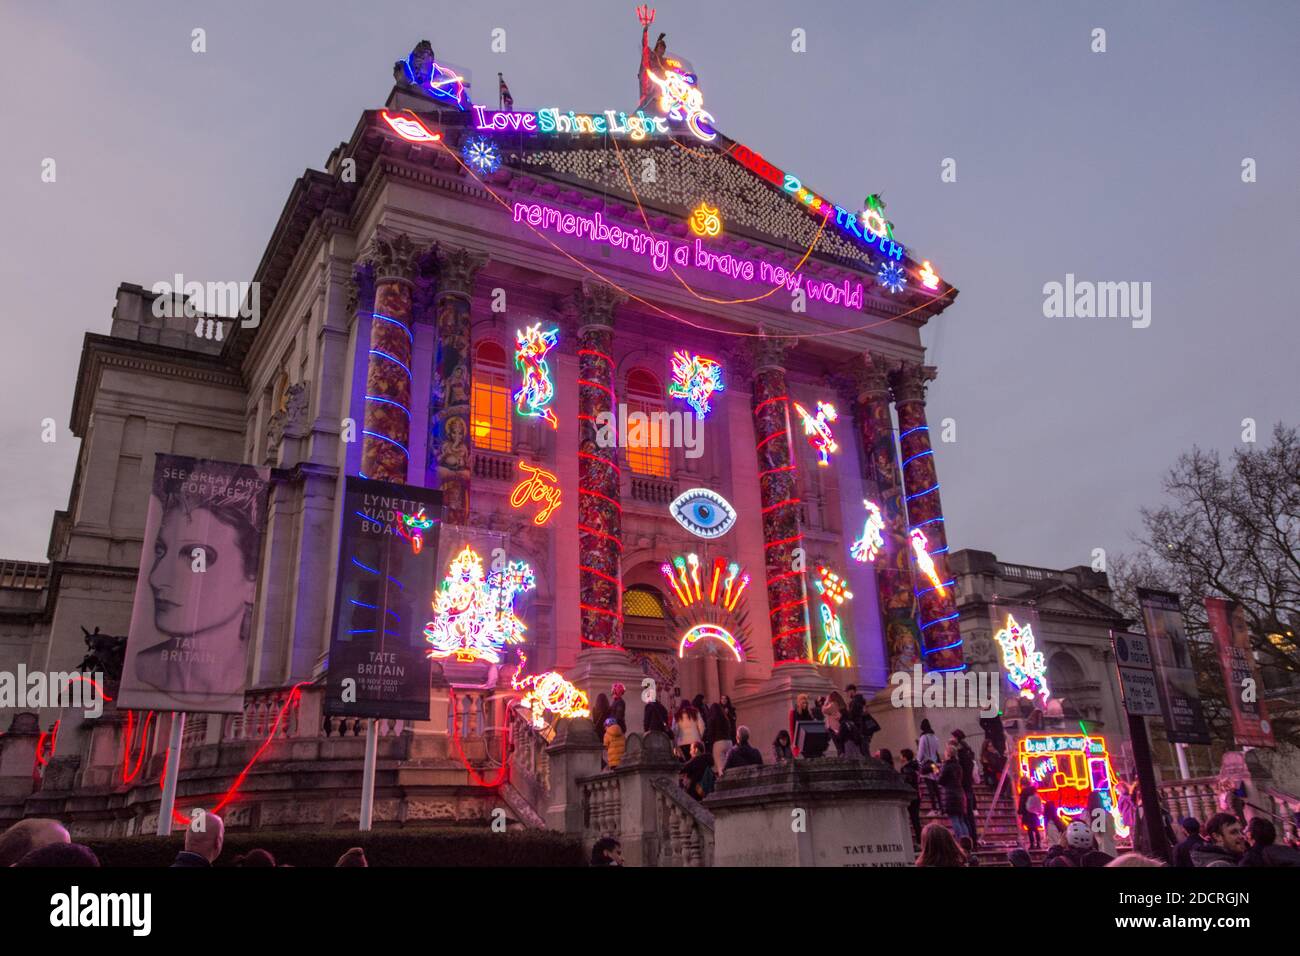 Chila Kumari Singh Burmans Remembering a Brave New World Neonlichter und wirbelnde Farbinstallation in der Tate Britain, London, England, Großbritannien Stockfoto